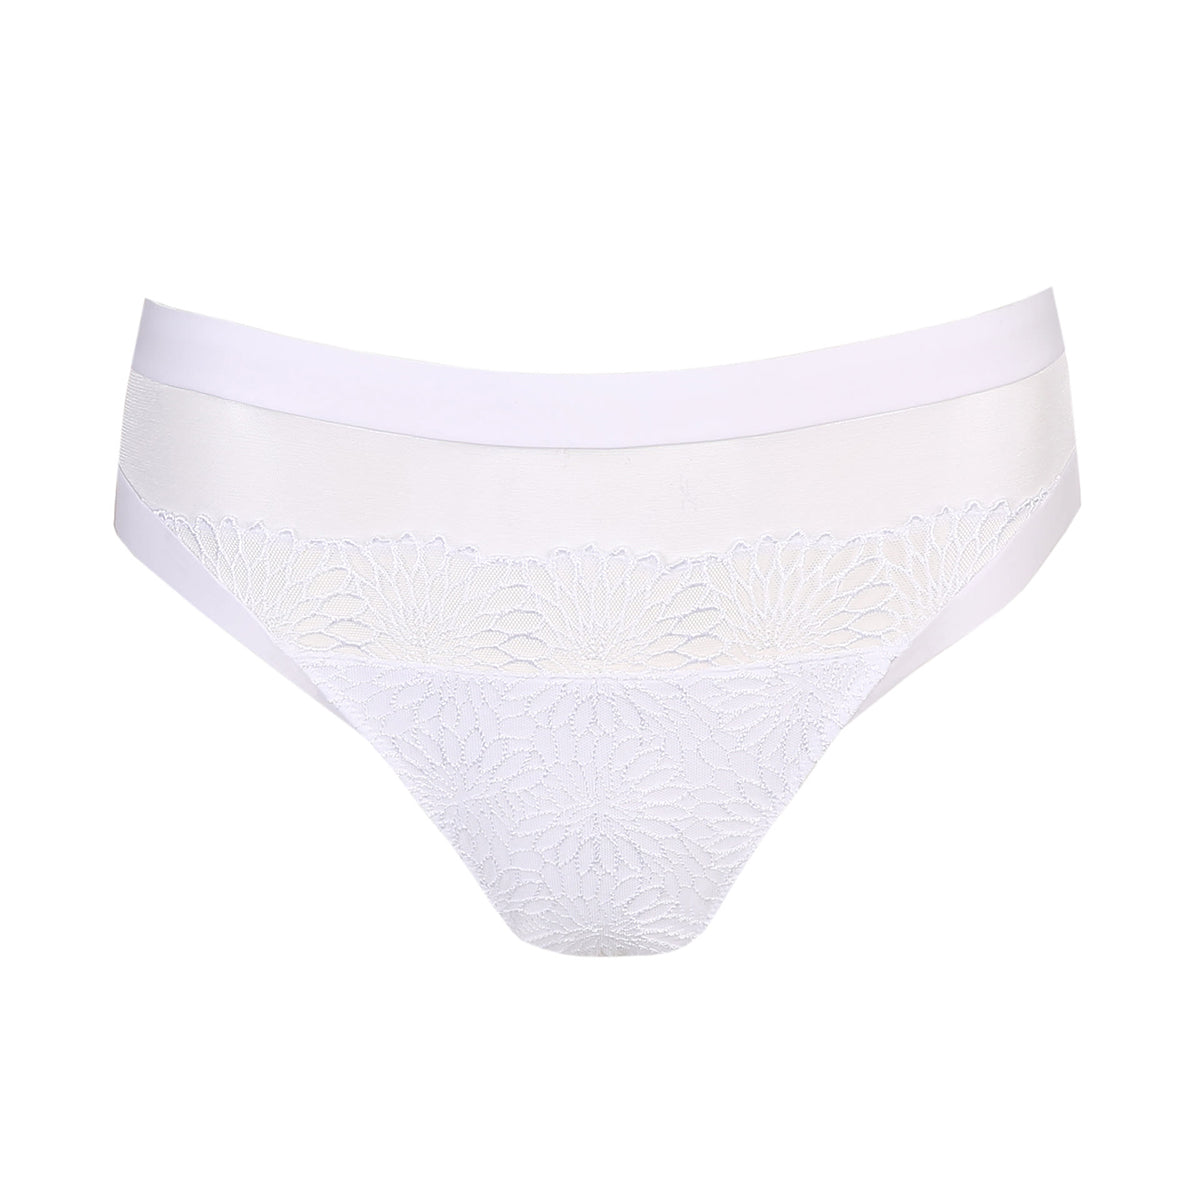 PrimaDonna Sophora Rio bikini Panty brief in white bride bridal 016-3180 prima donna lingerie canada linea intima